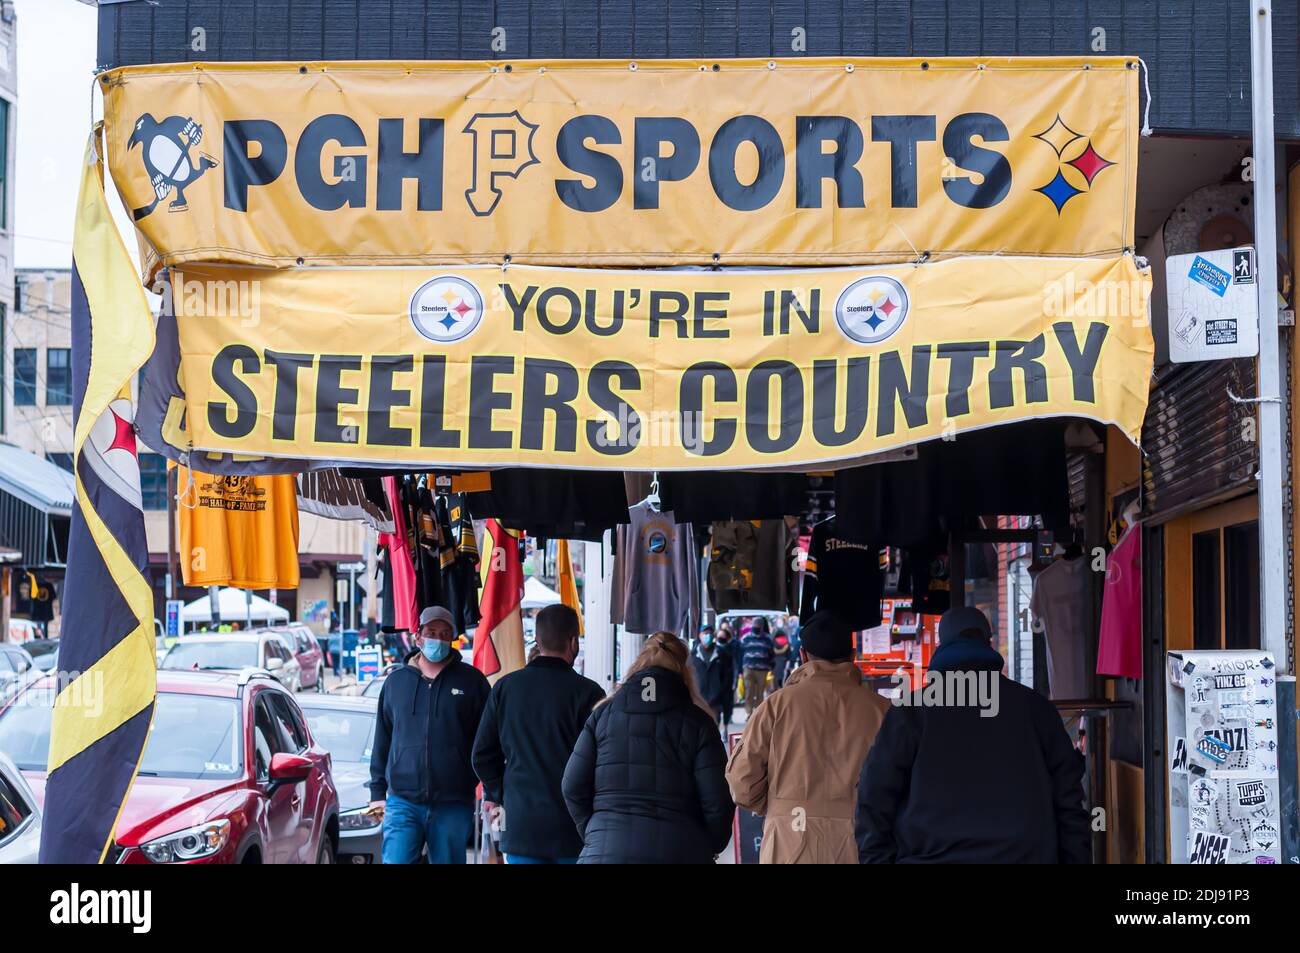 pittsburgh steelers fan store